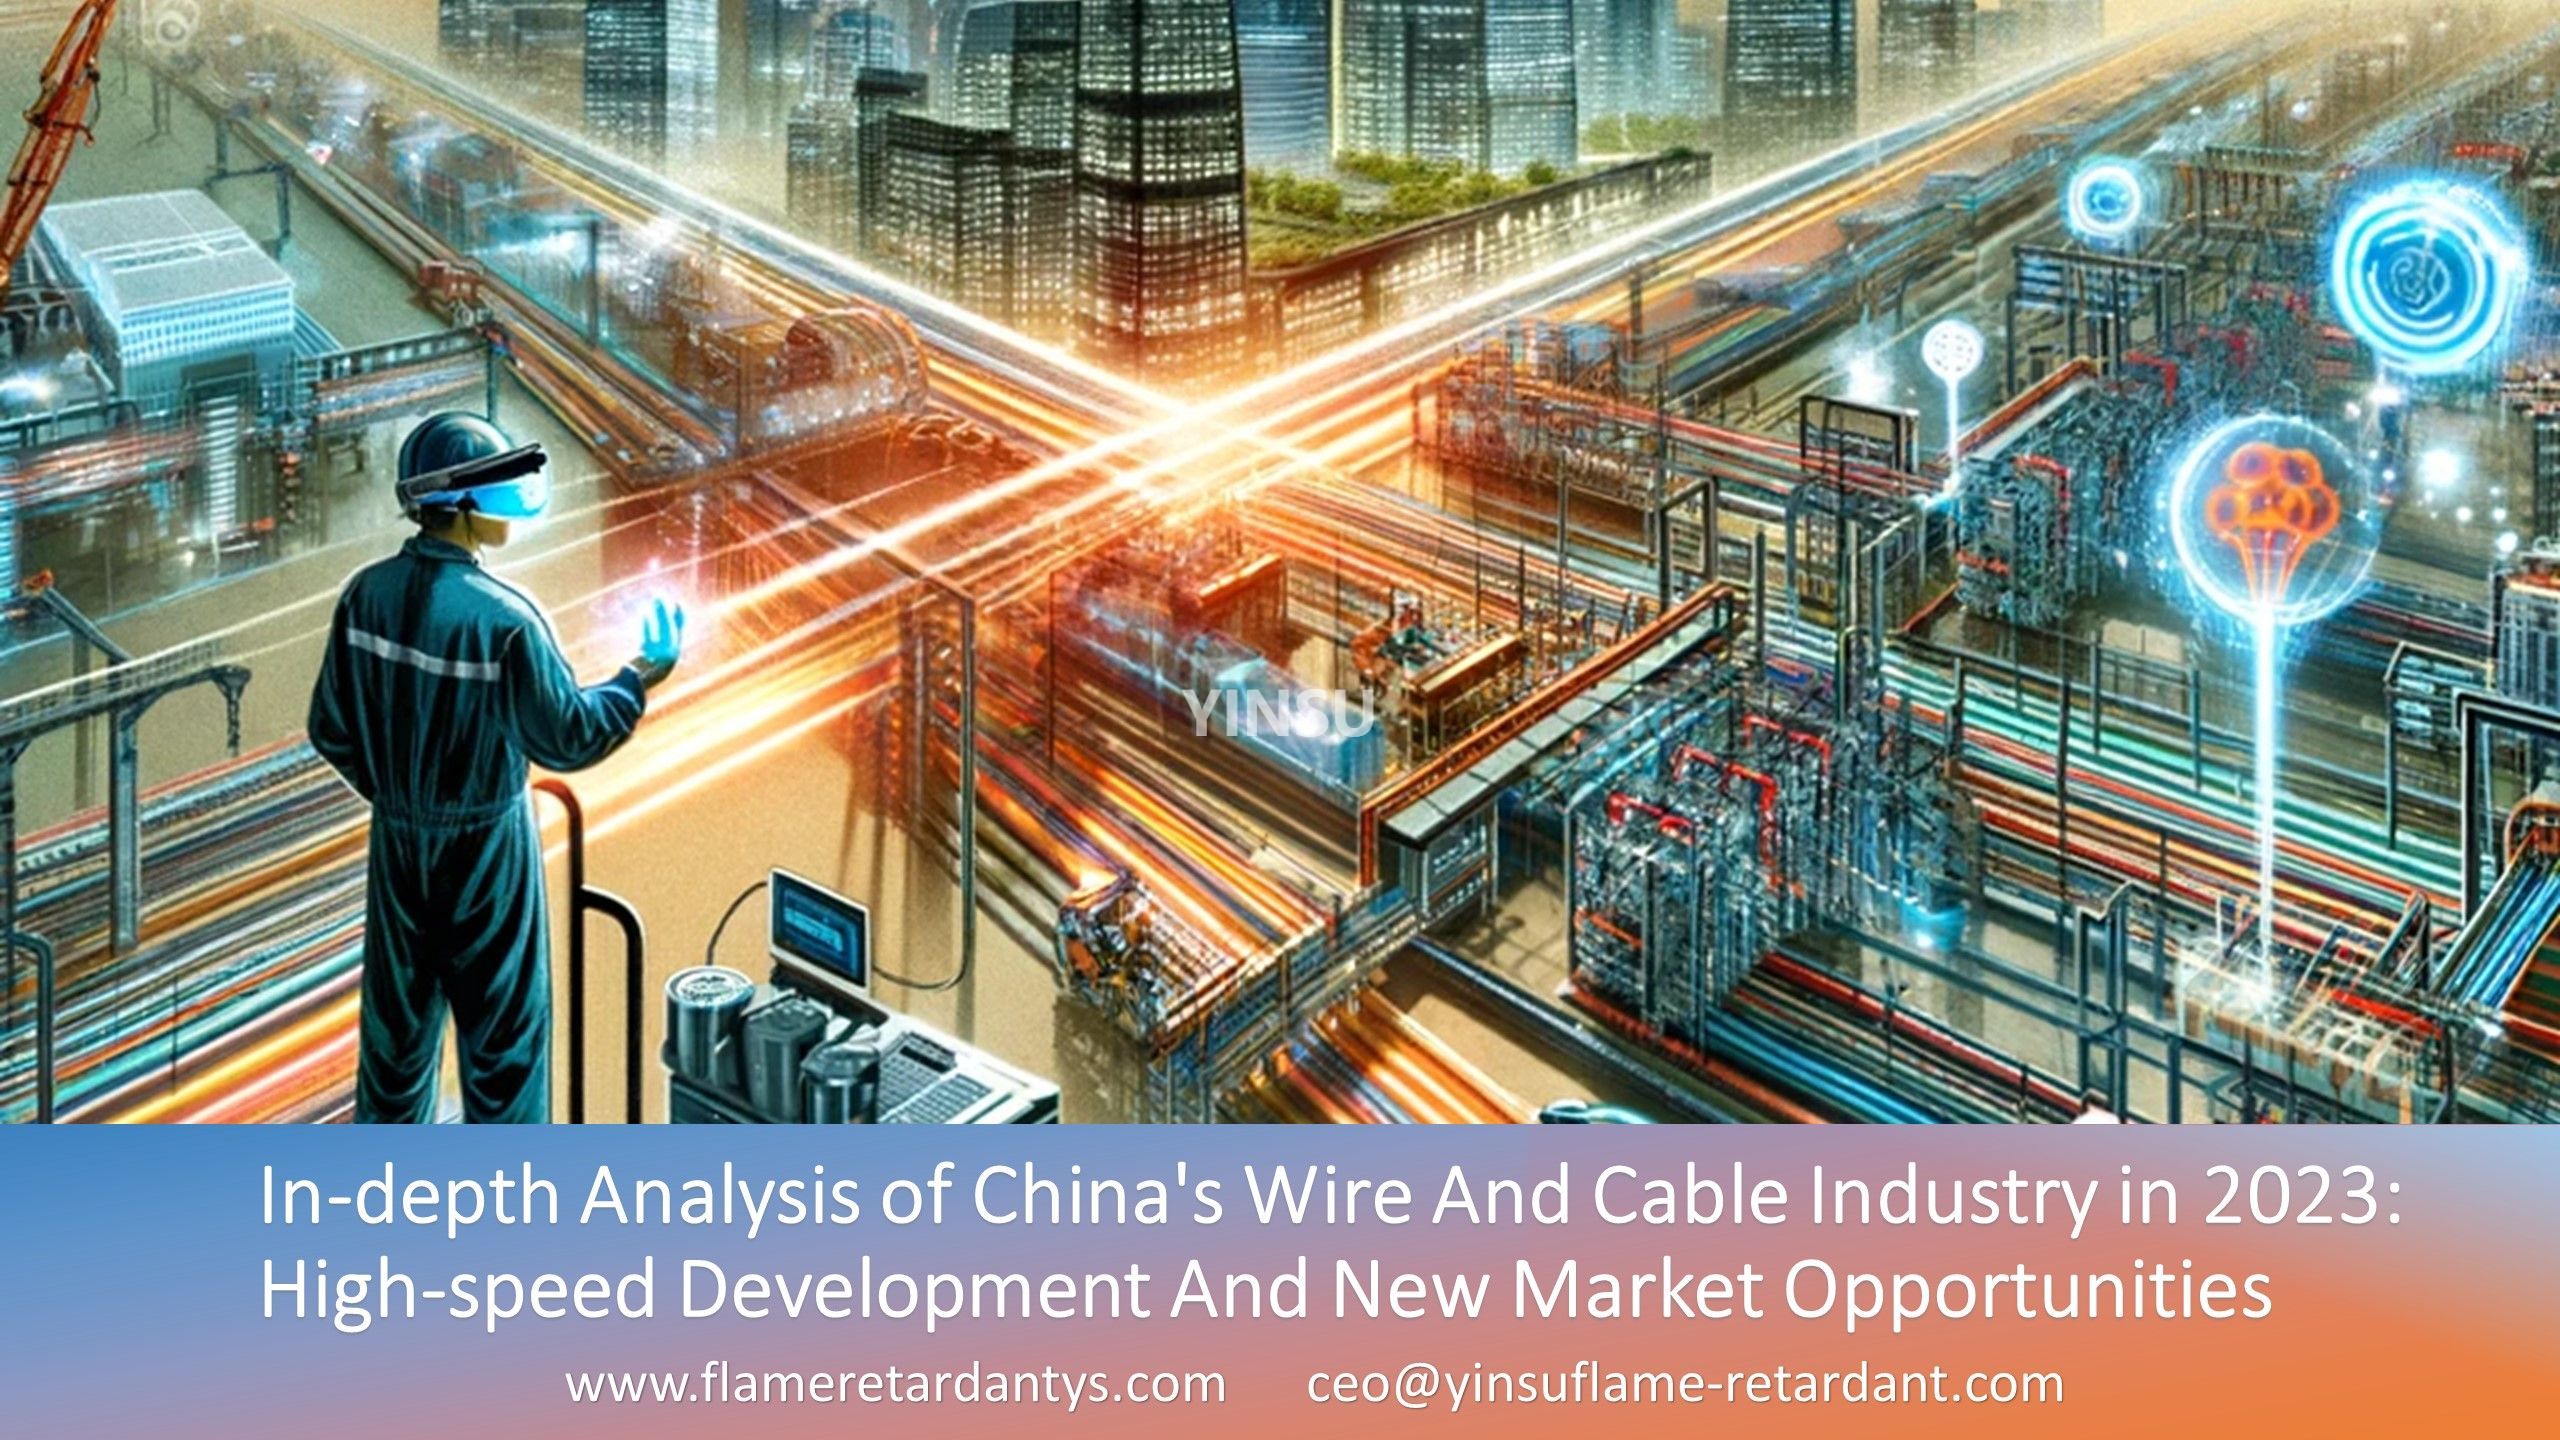 Análisis en profundidad de la industria china de alambres y cables en 2023